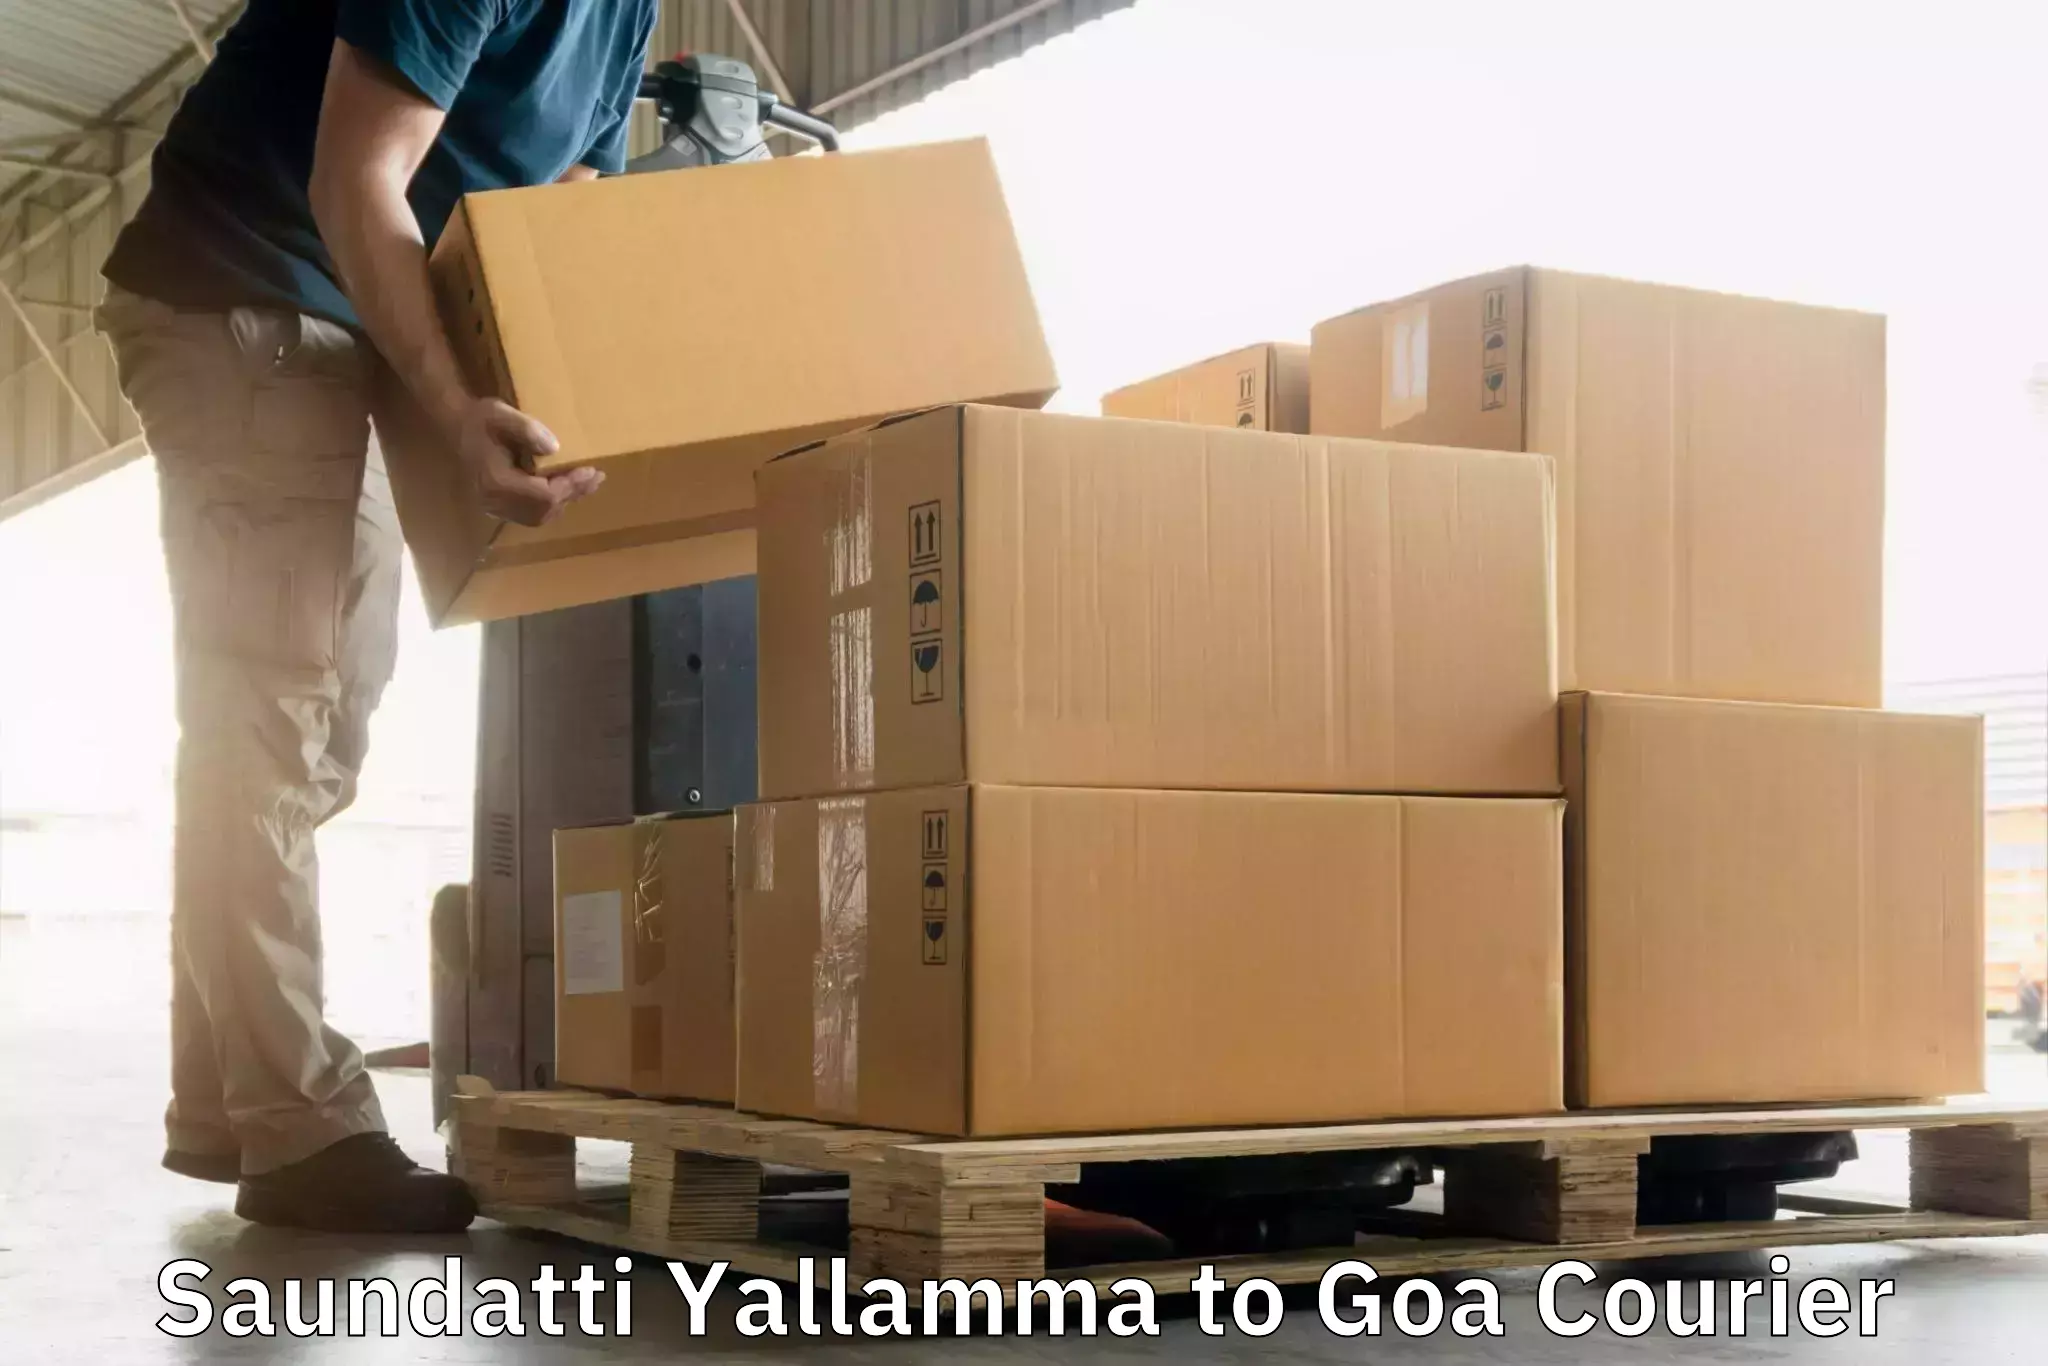 Courier service partnerships in Saundatti Yallamma to IIT Goa